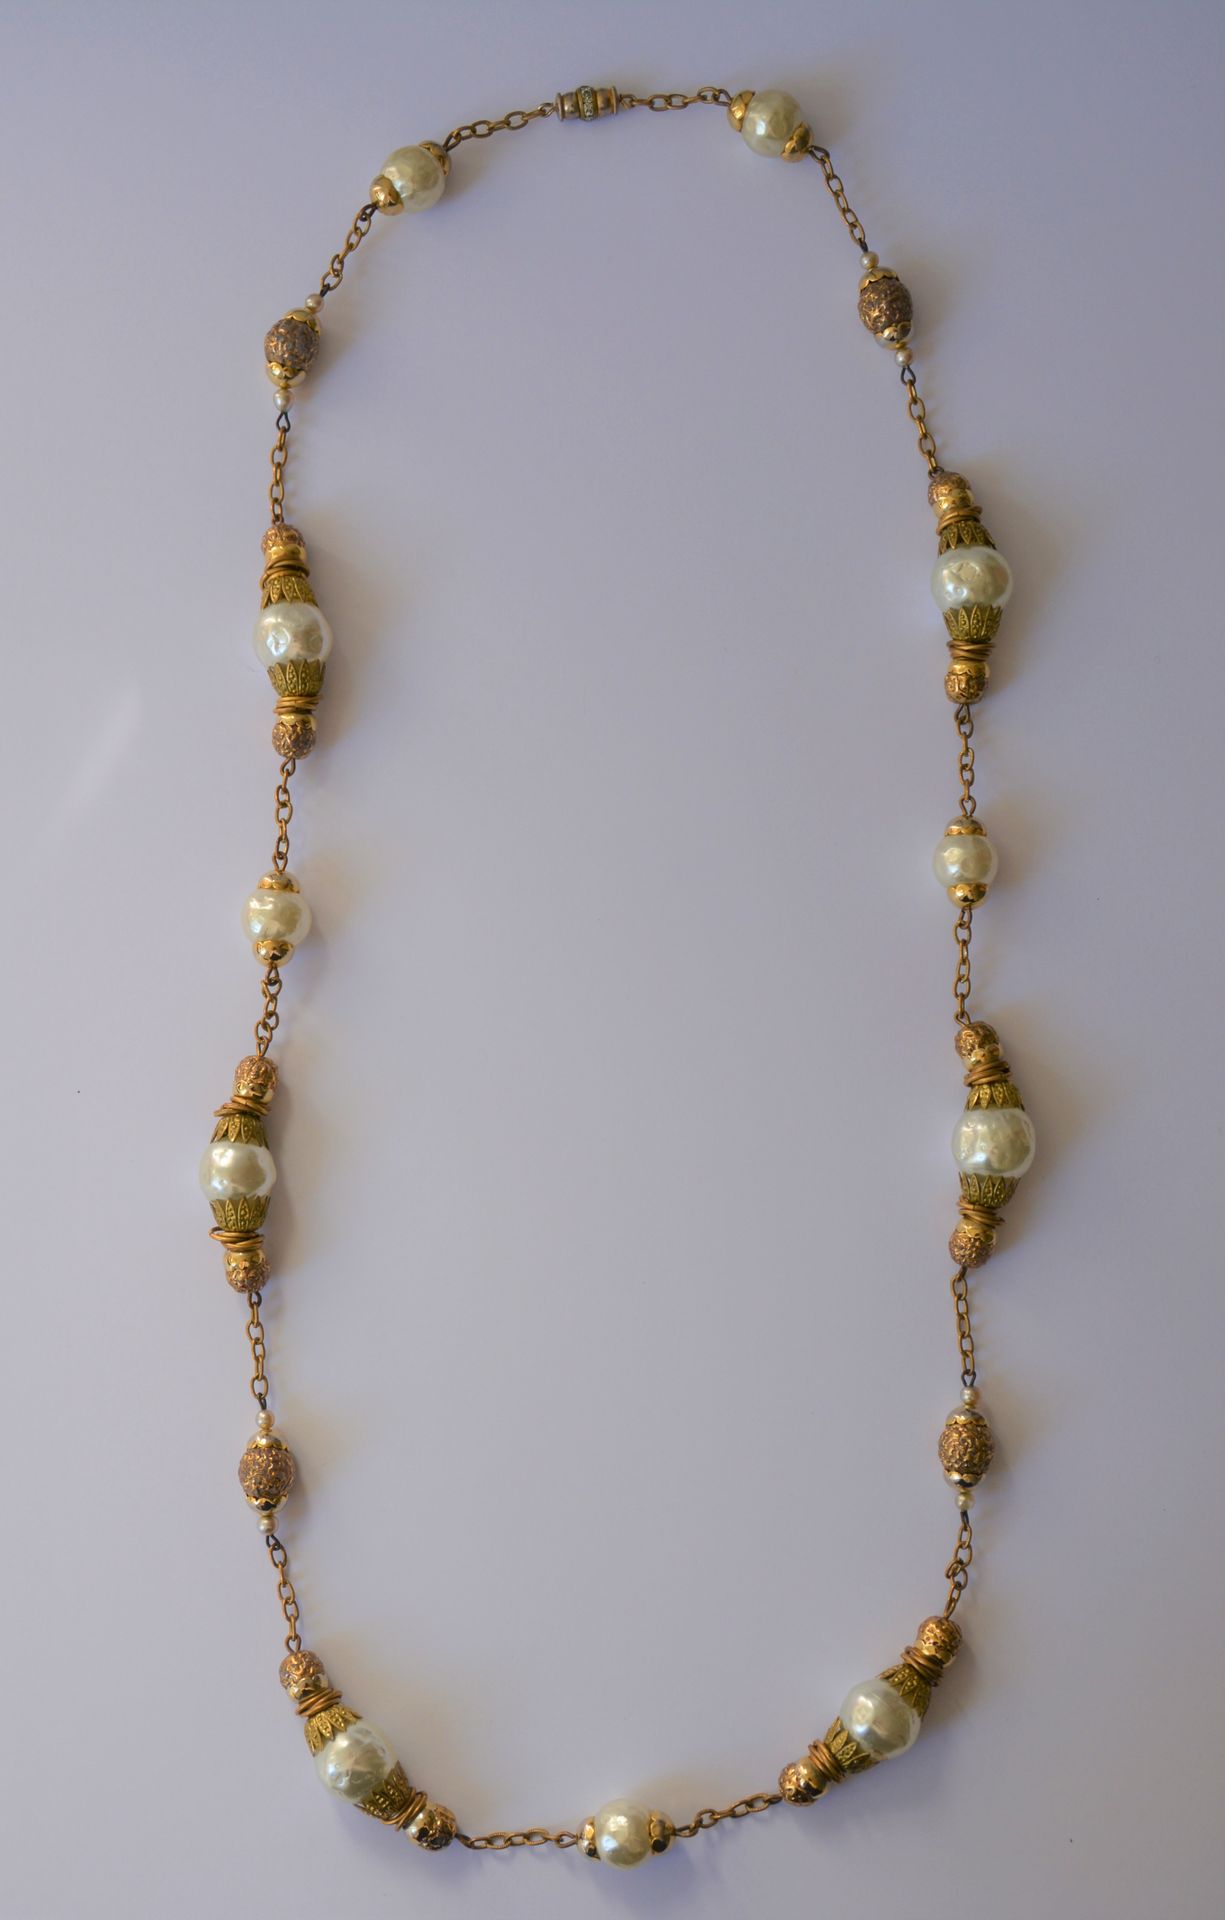 Dans le goût de Chanel 
香奈儿味道的项链。仿巴洛克珍珠花式项链，象牙色，金色金属链。长度：85厘米